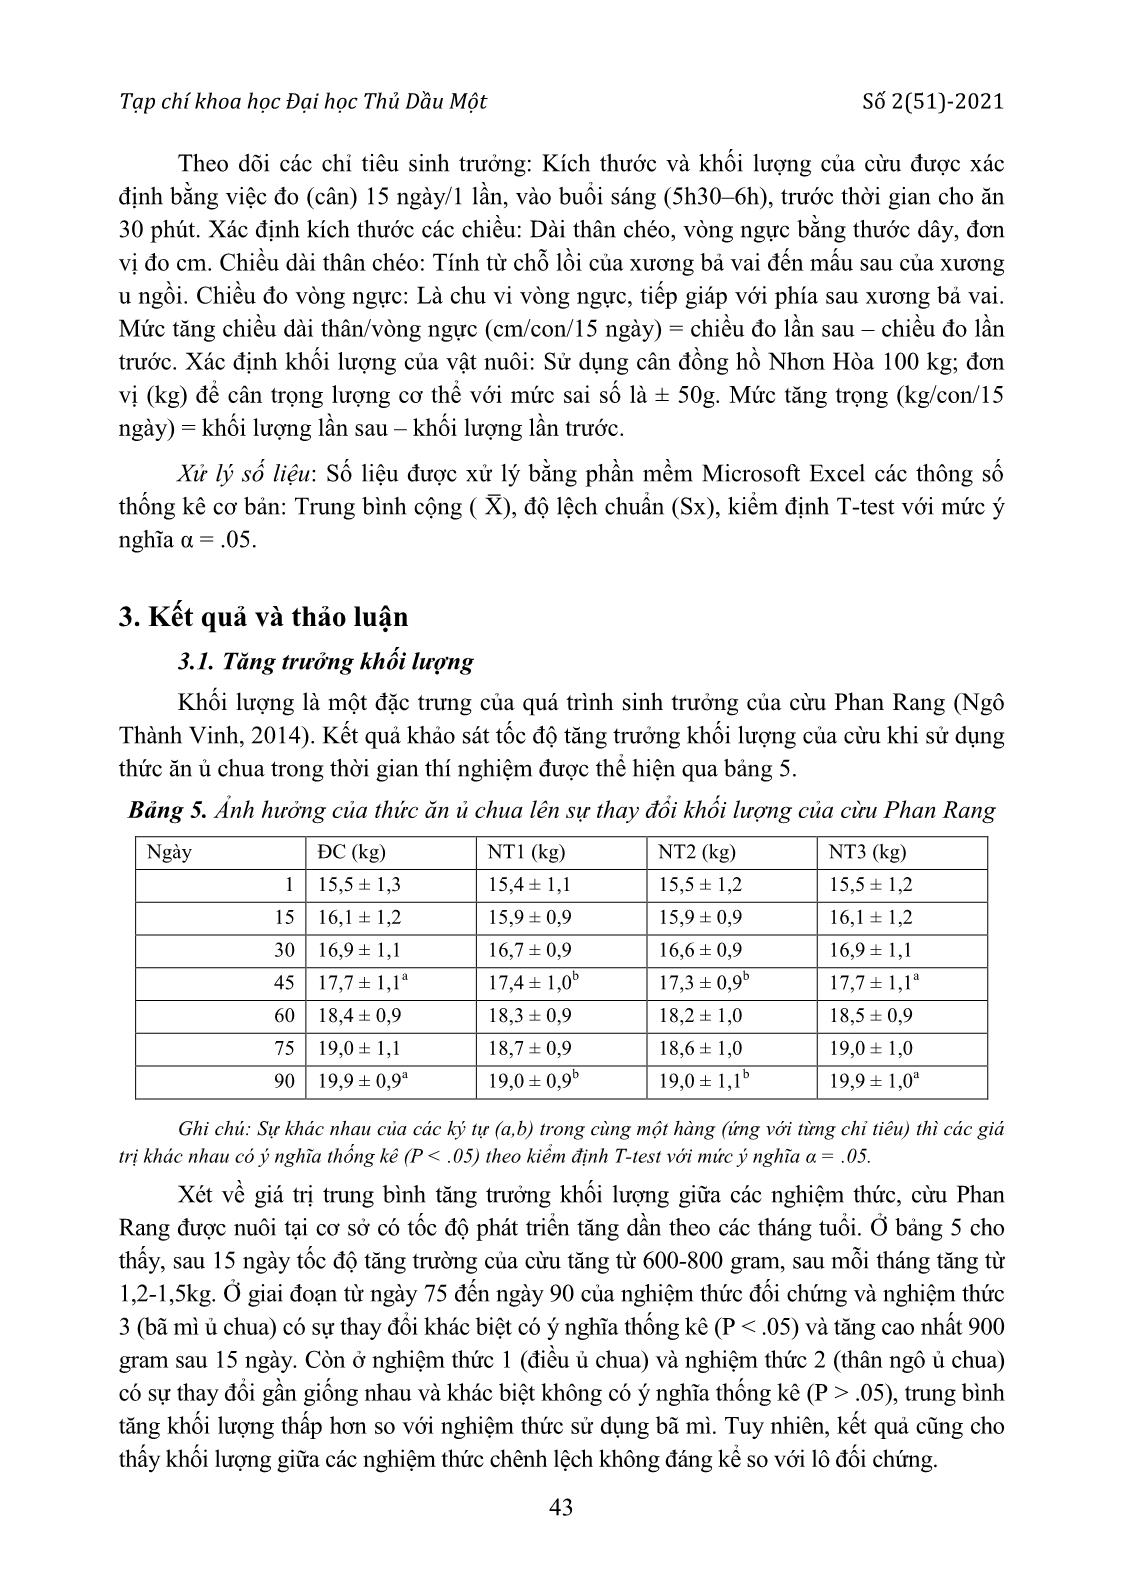 Khảo sát các chỉ tiêu sinh trưởng của cừu Phan Rang khi sử dụng thức ăn ủ chua trang 4